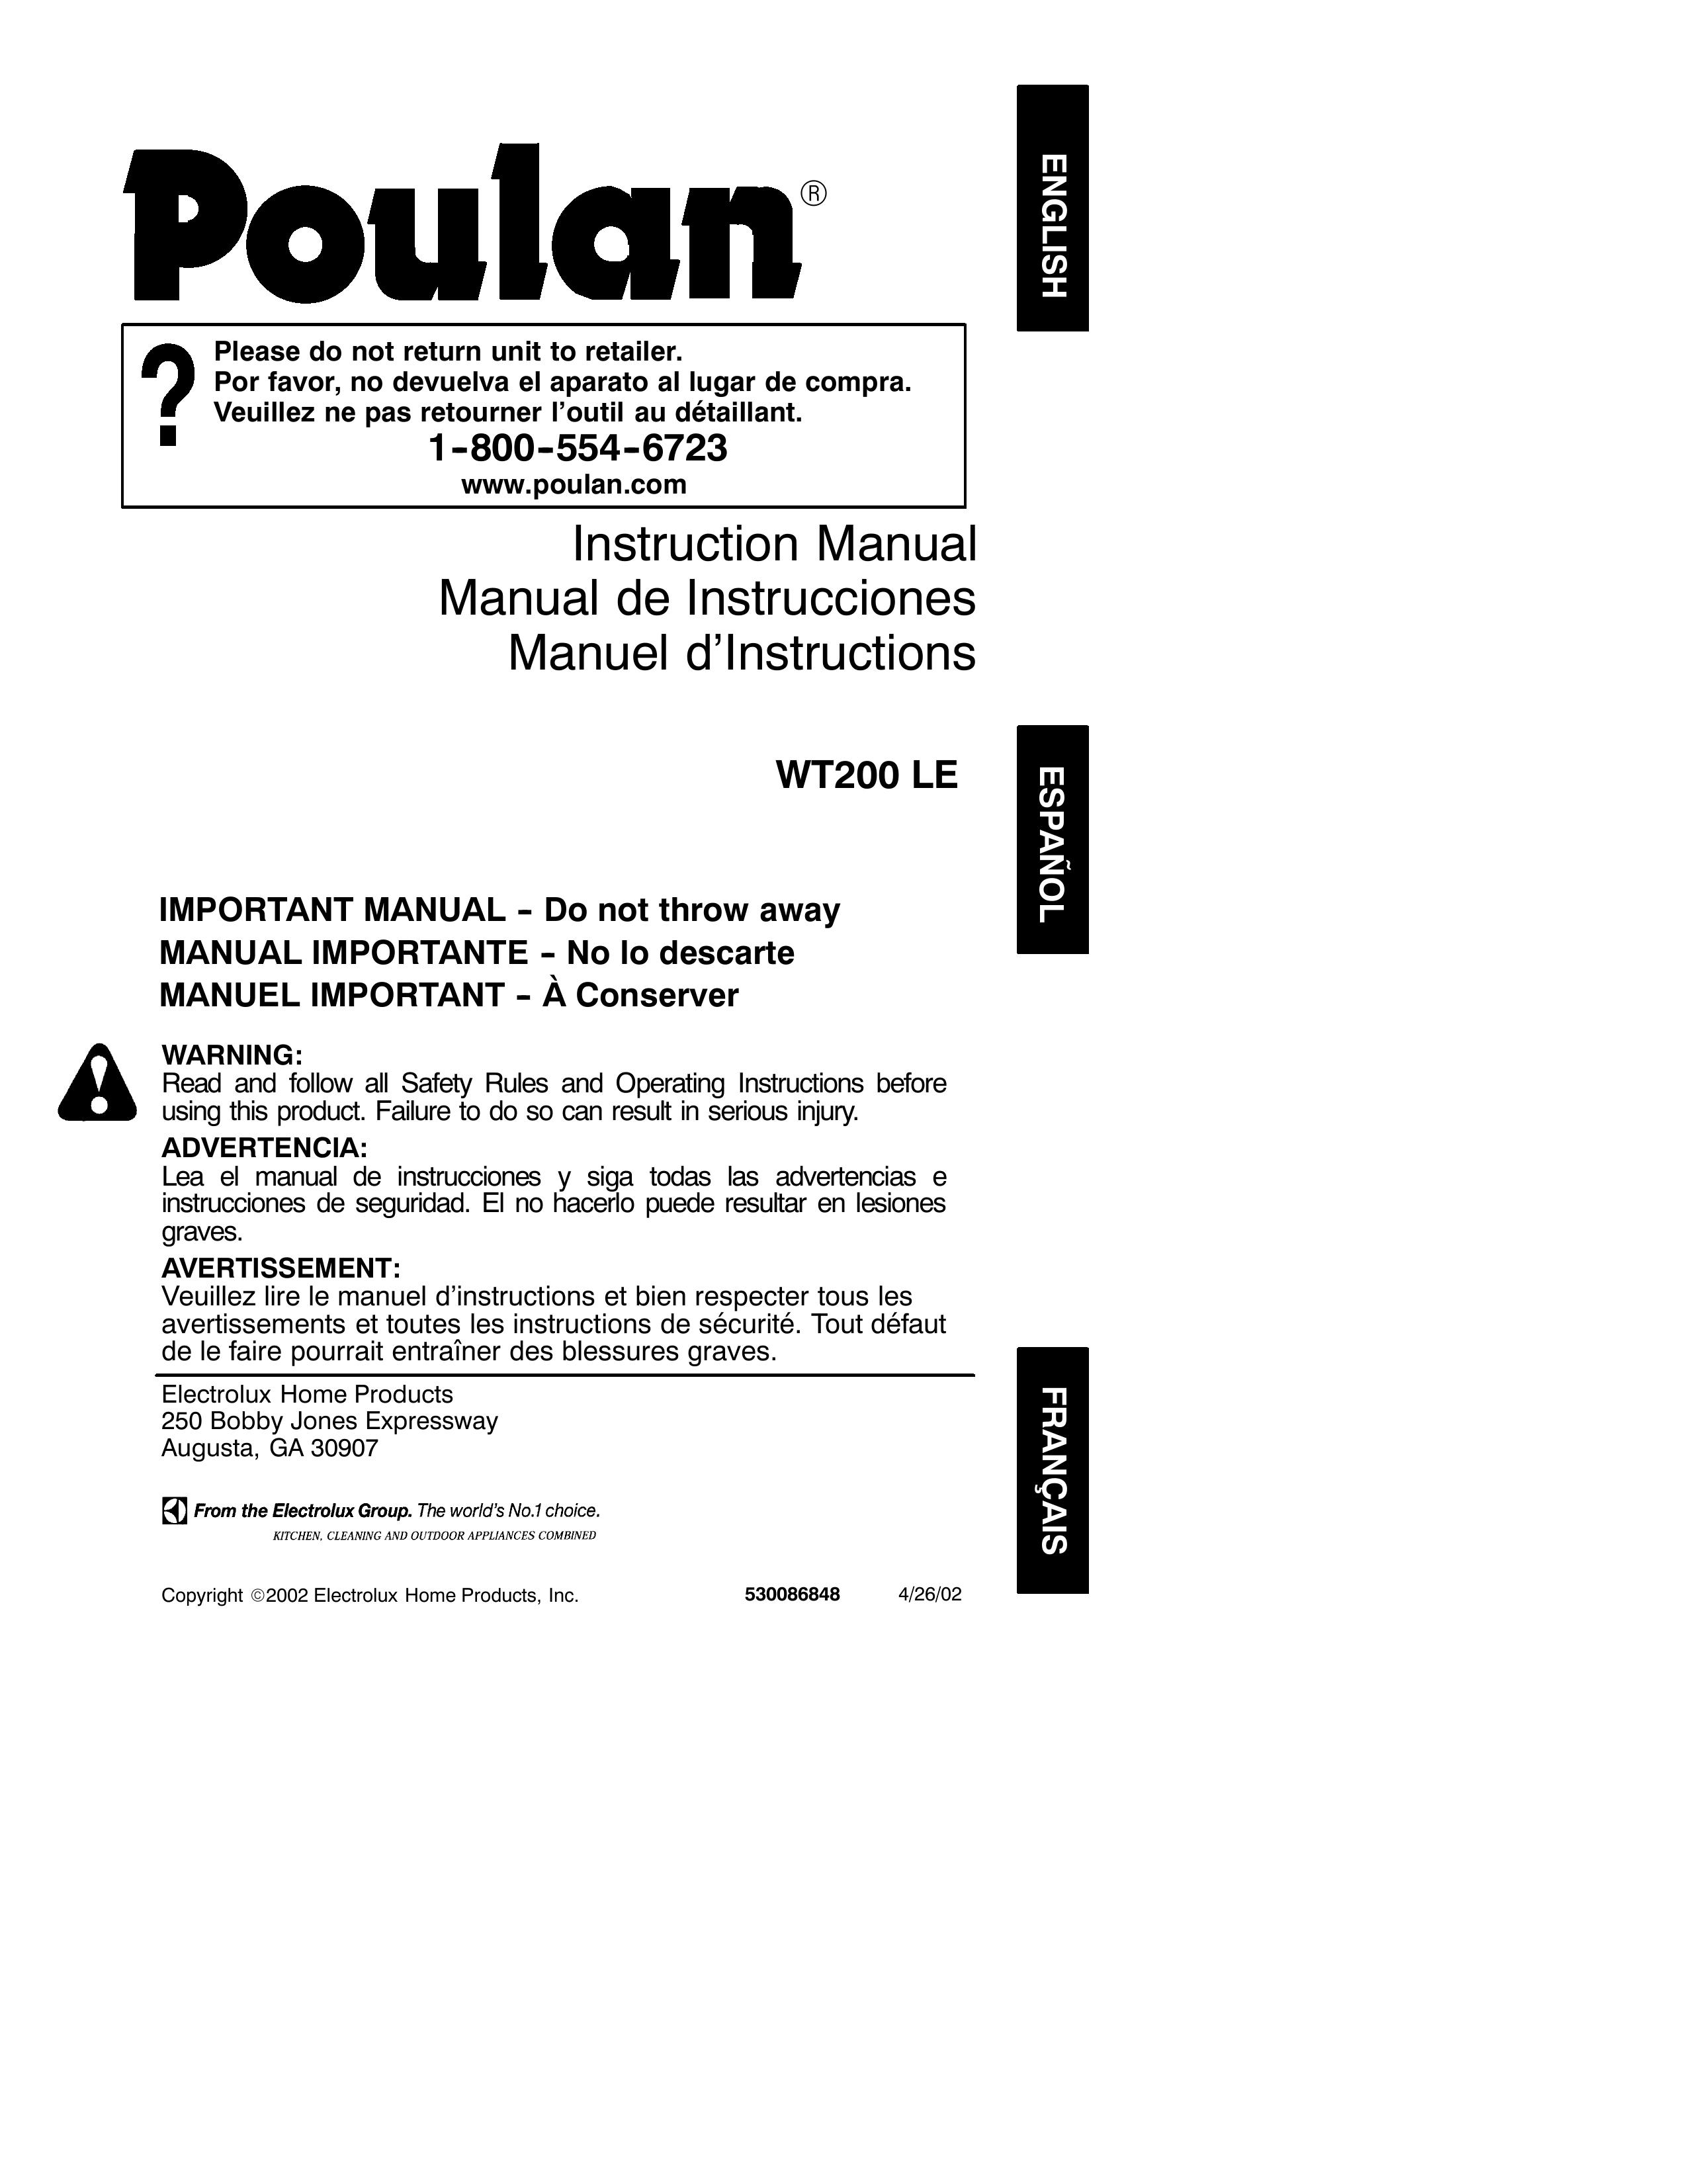 Poulan 530086848 Blower User Manual